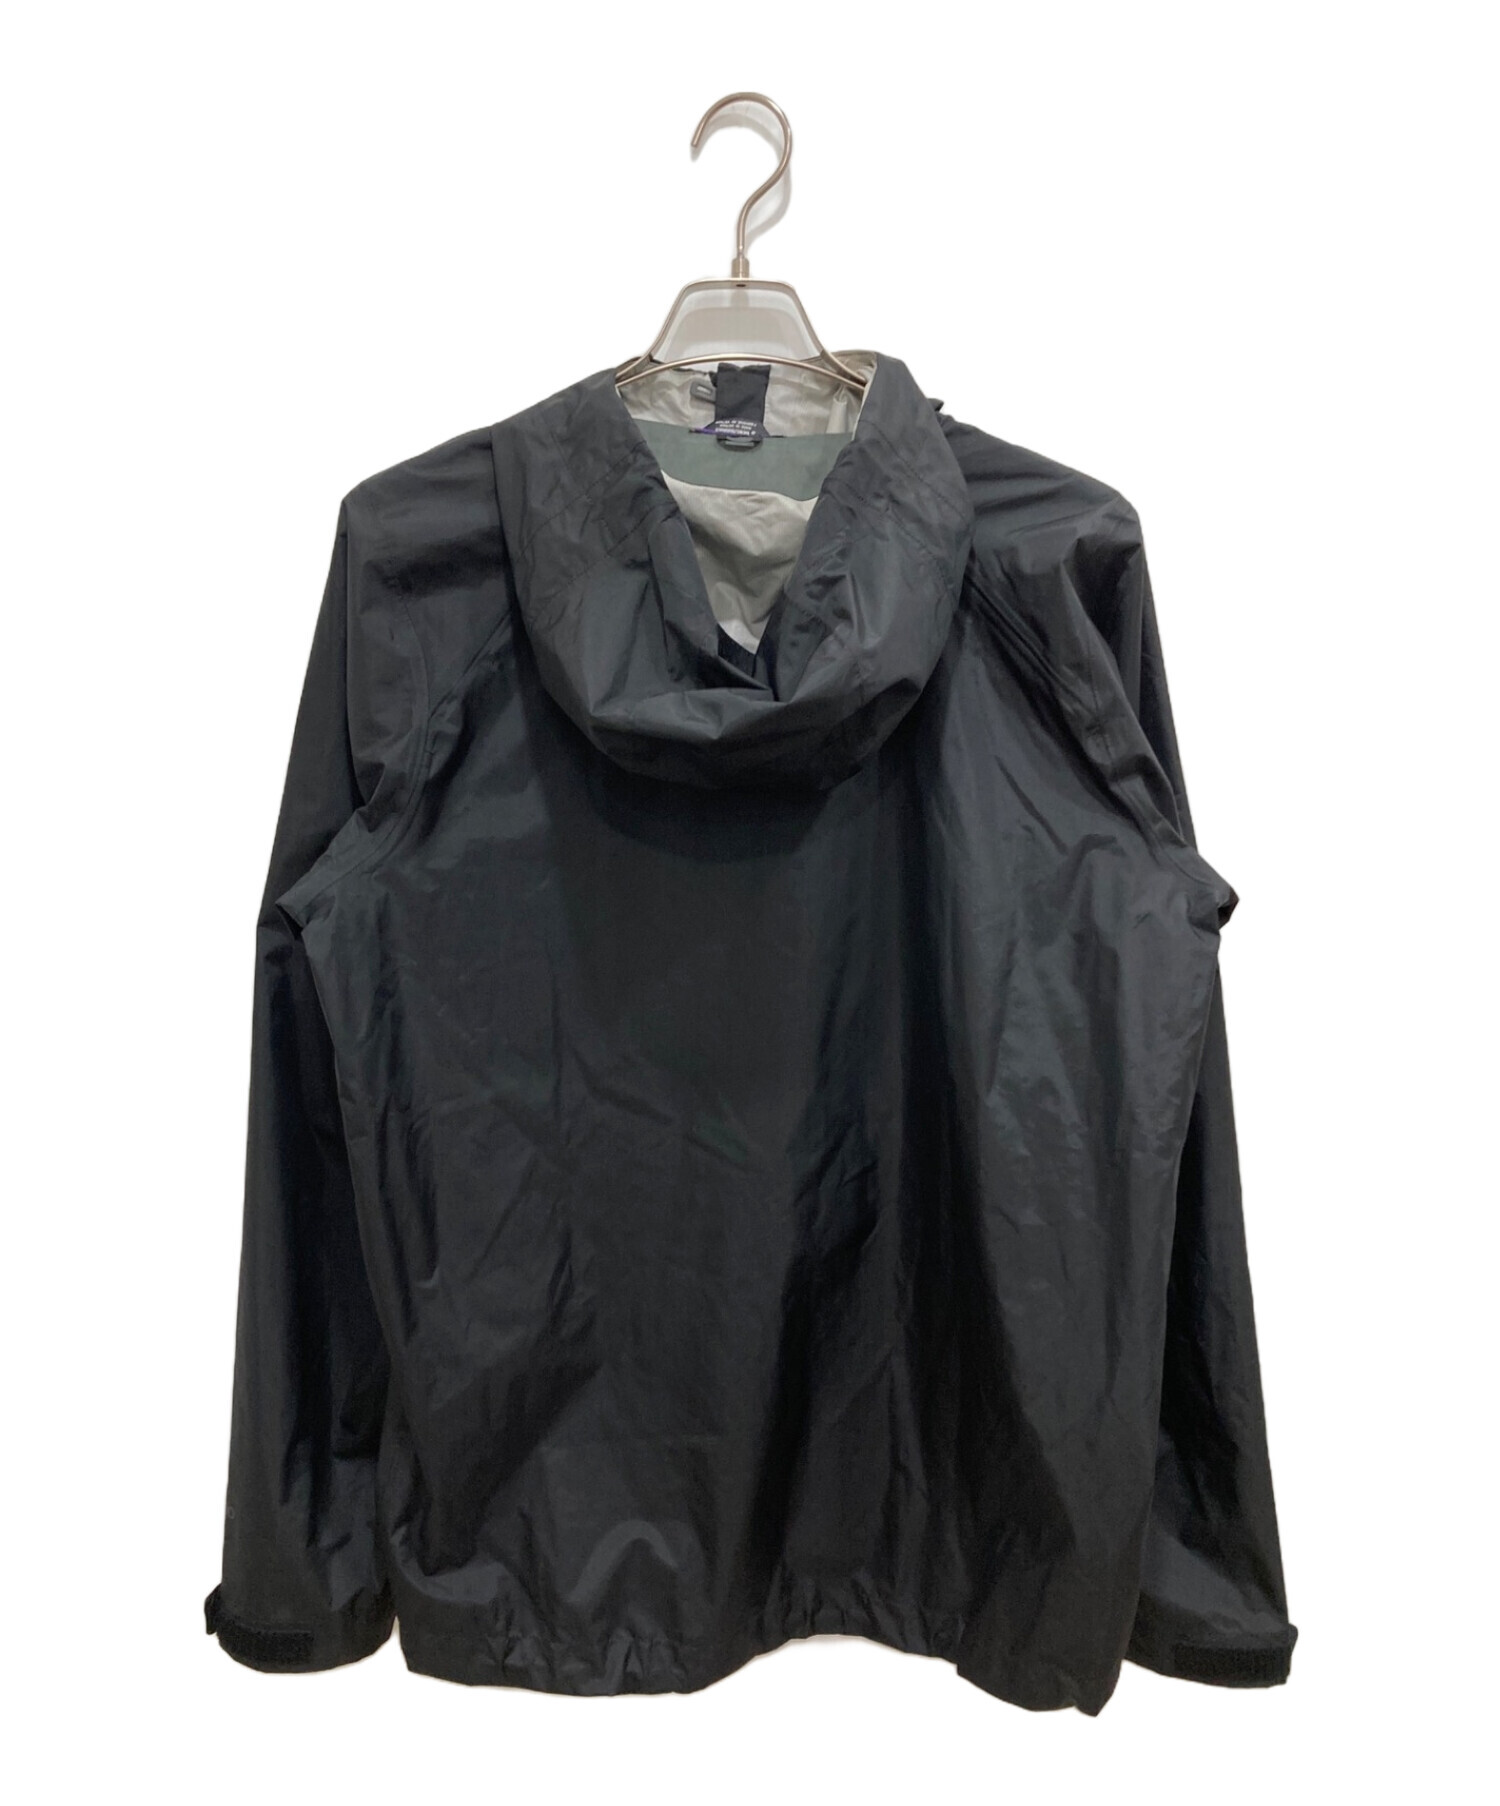 濃いグレーと黒の２色て感じですトレントシェルジャケット　Ｓ黒×グレー